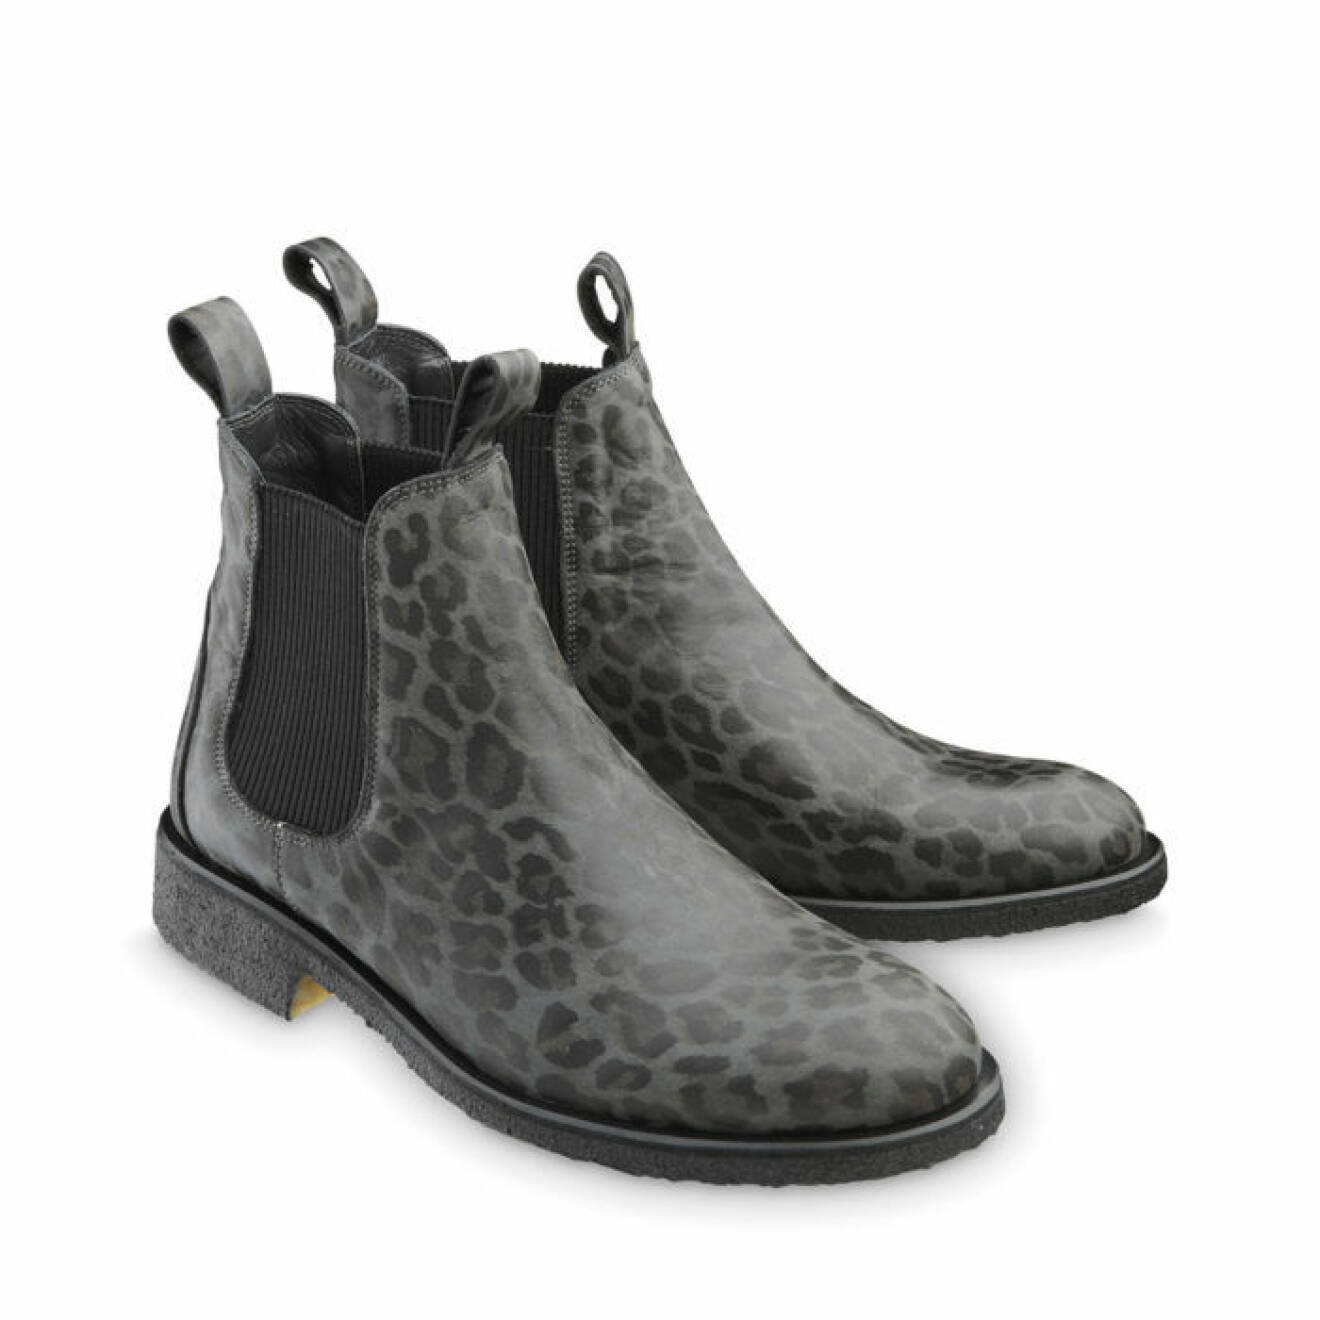 Djurmönster 1. Leopardmönstrade boots, 1 495 kr, Angulus.